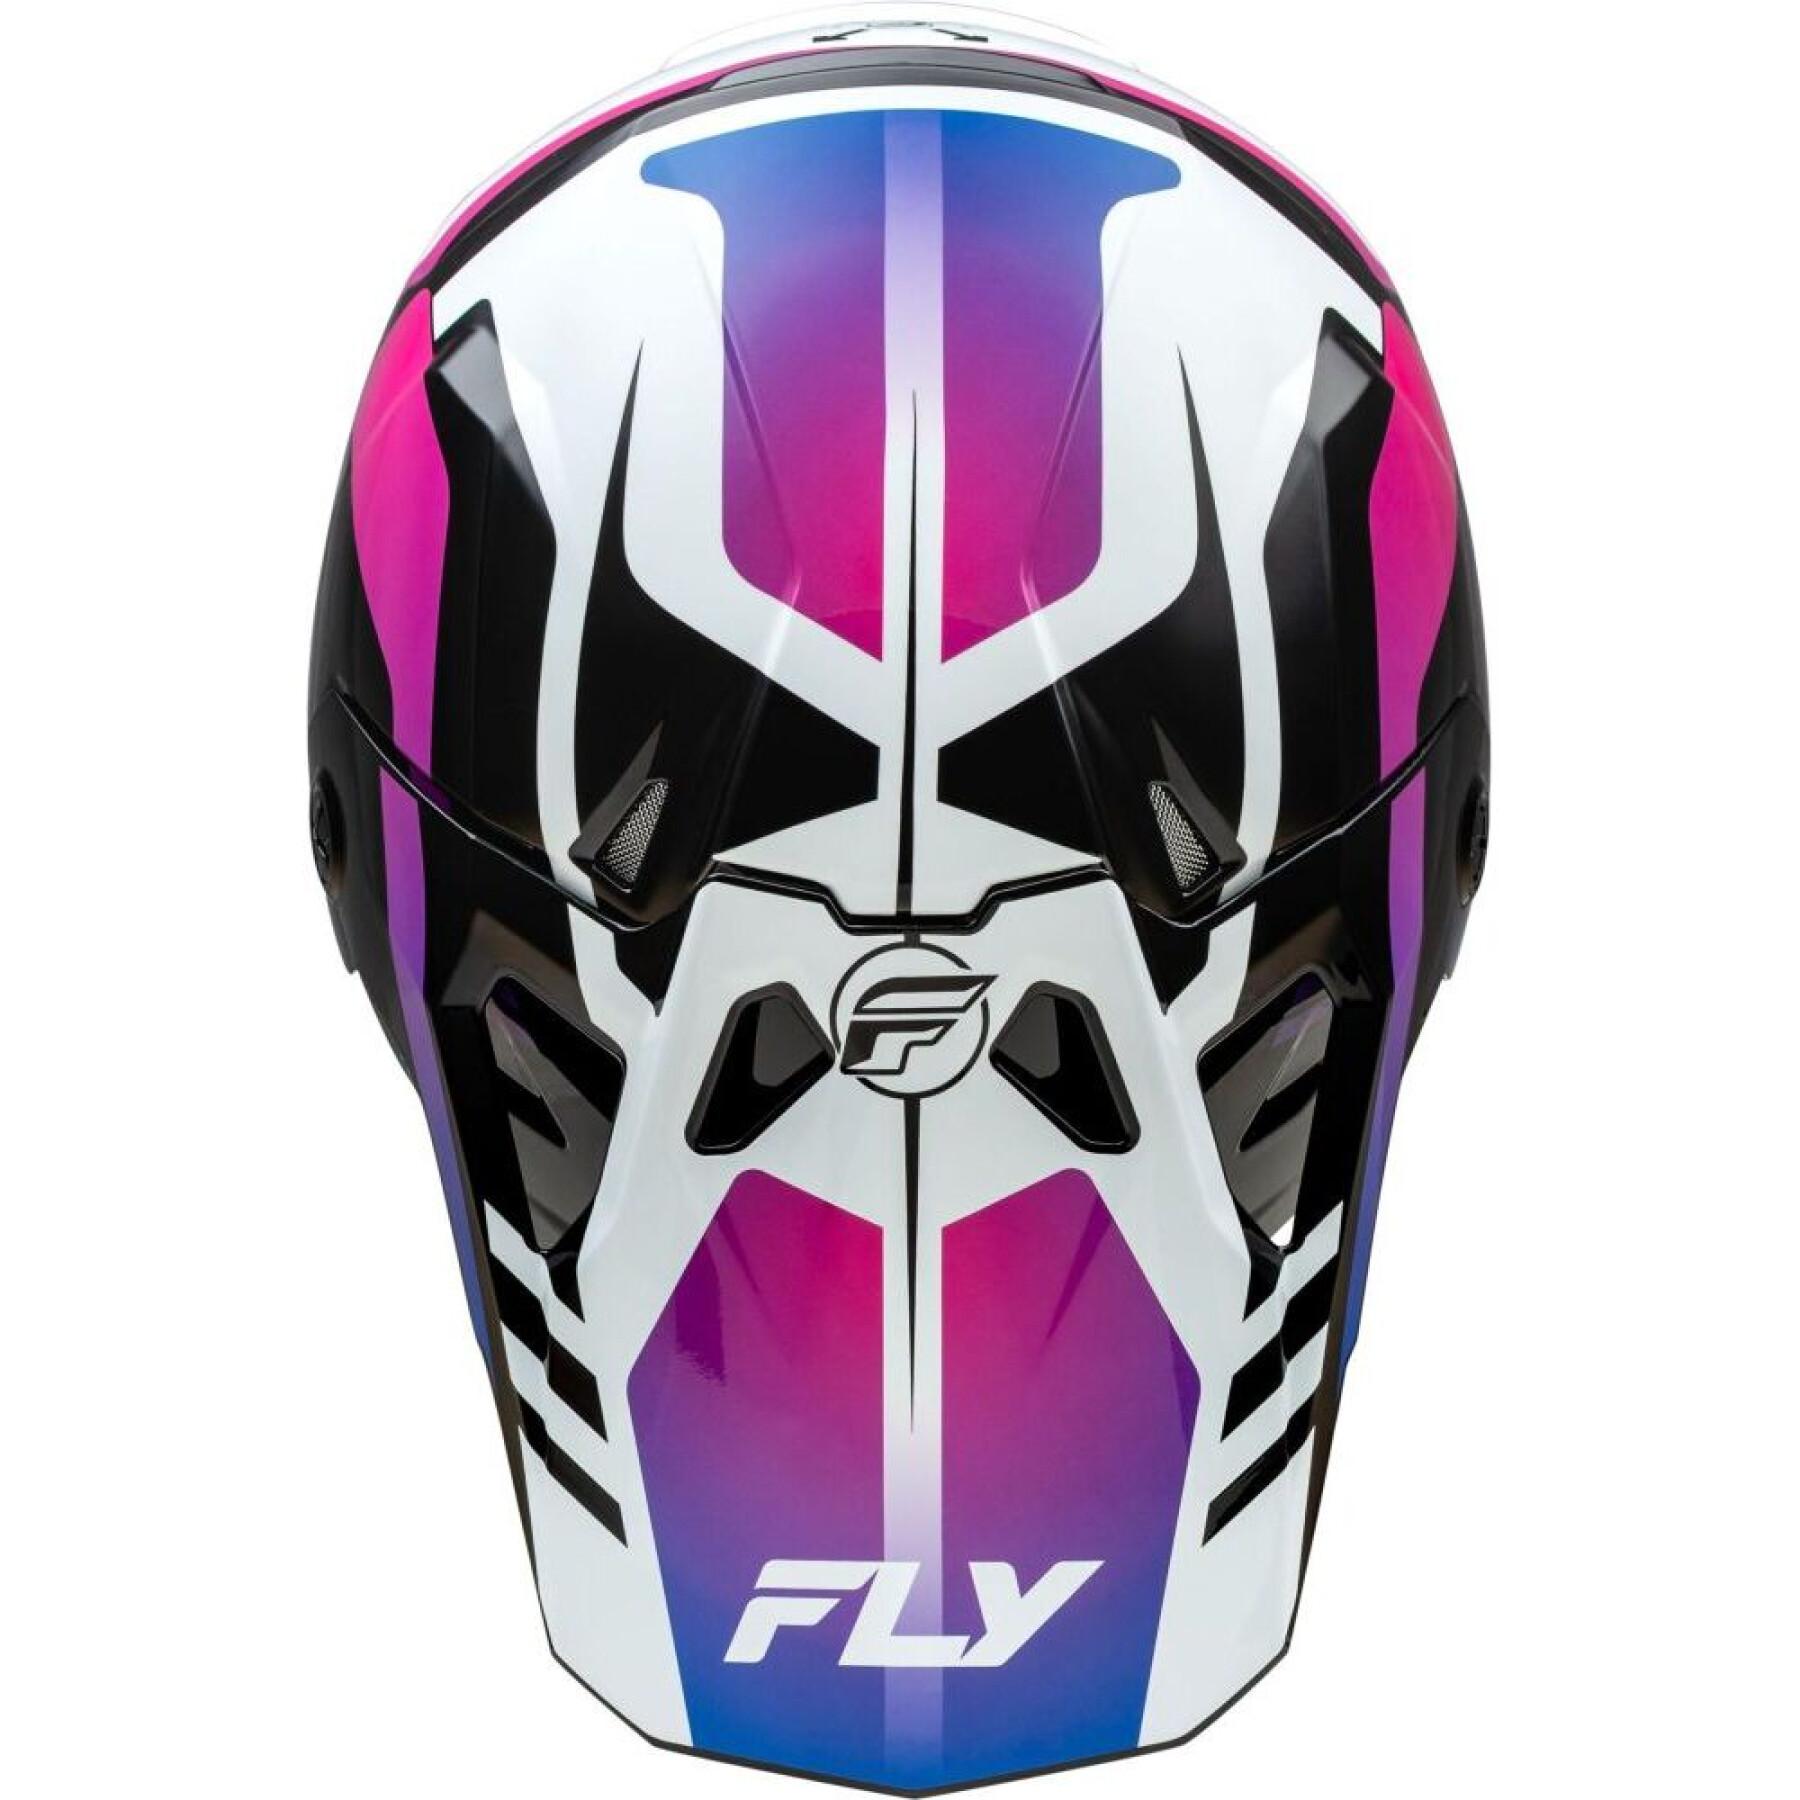 Motorcycle helmet Fly Racing Formula Cp Krypton